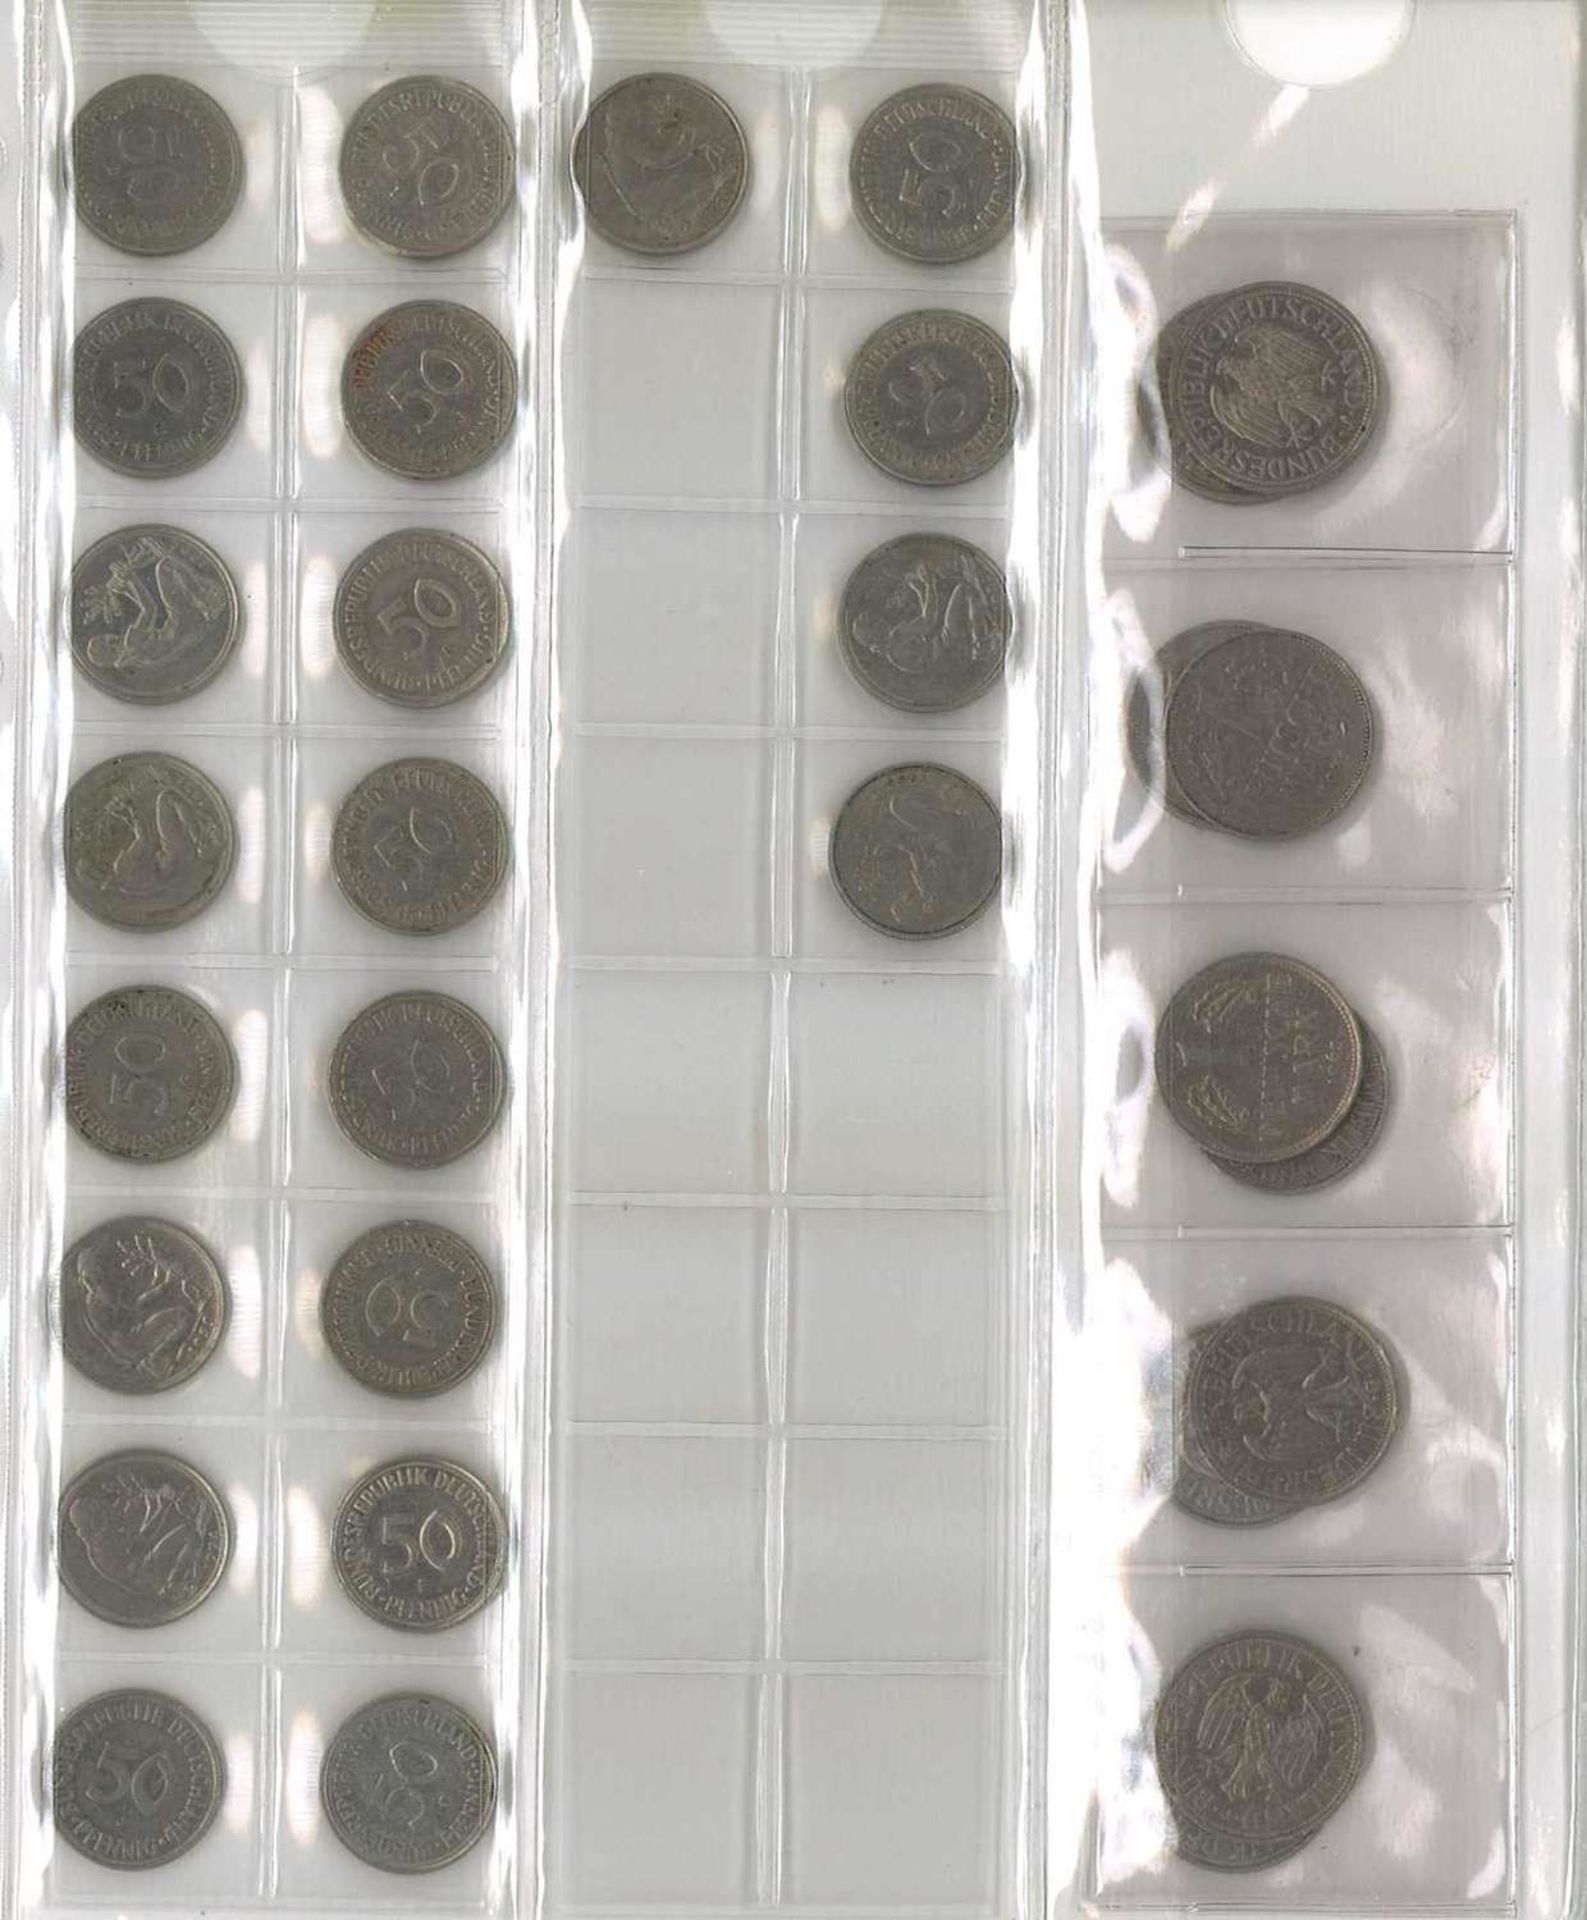 Lot Münzen, meist BRD, dabei 7x 10 Mark, 25x 5 Mark, 13x 2 Mark, 35x 1 Mark, 37x 50 Pfennig. Nomin - Bild 5 aus 6